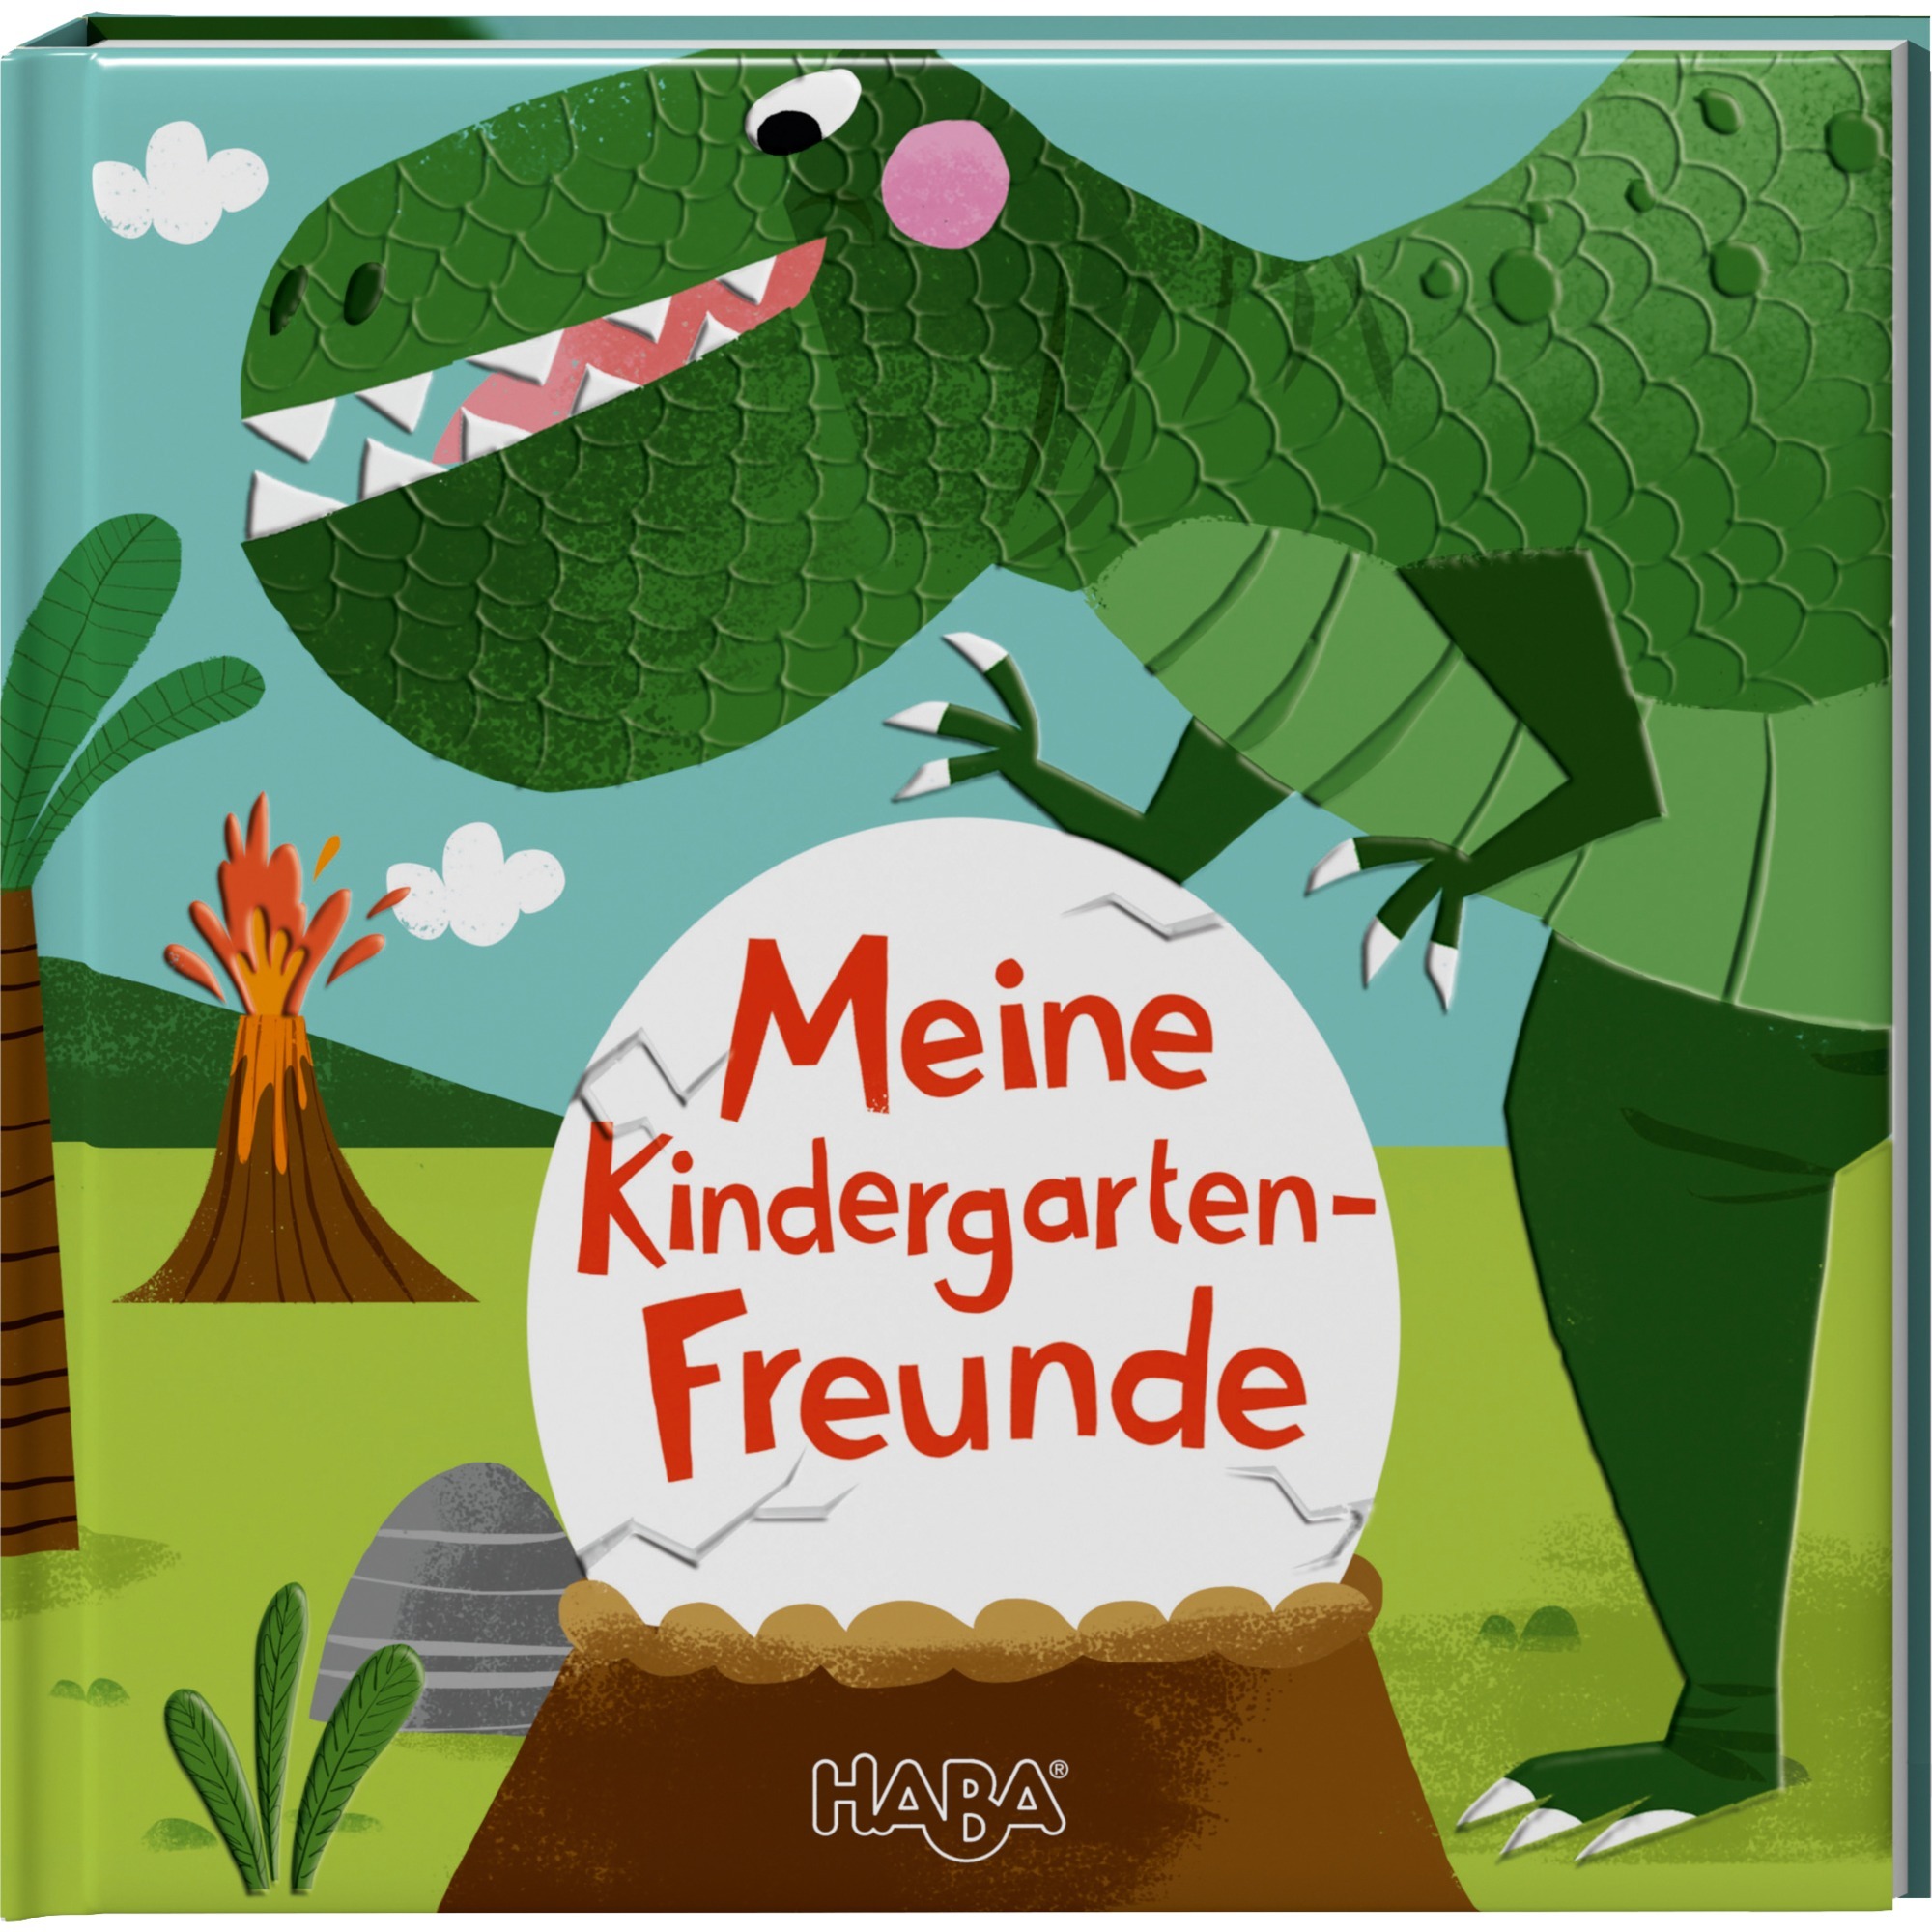 Dinos - Meine Kindergarten-Freunde